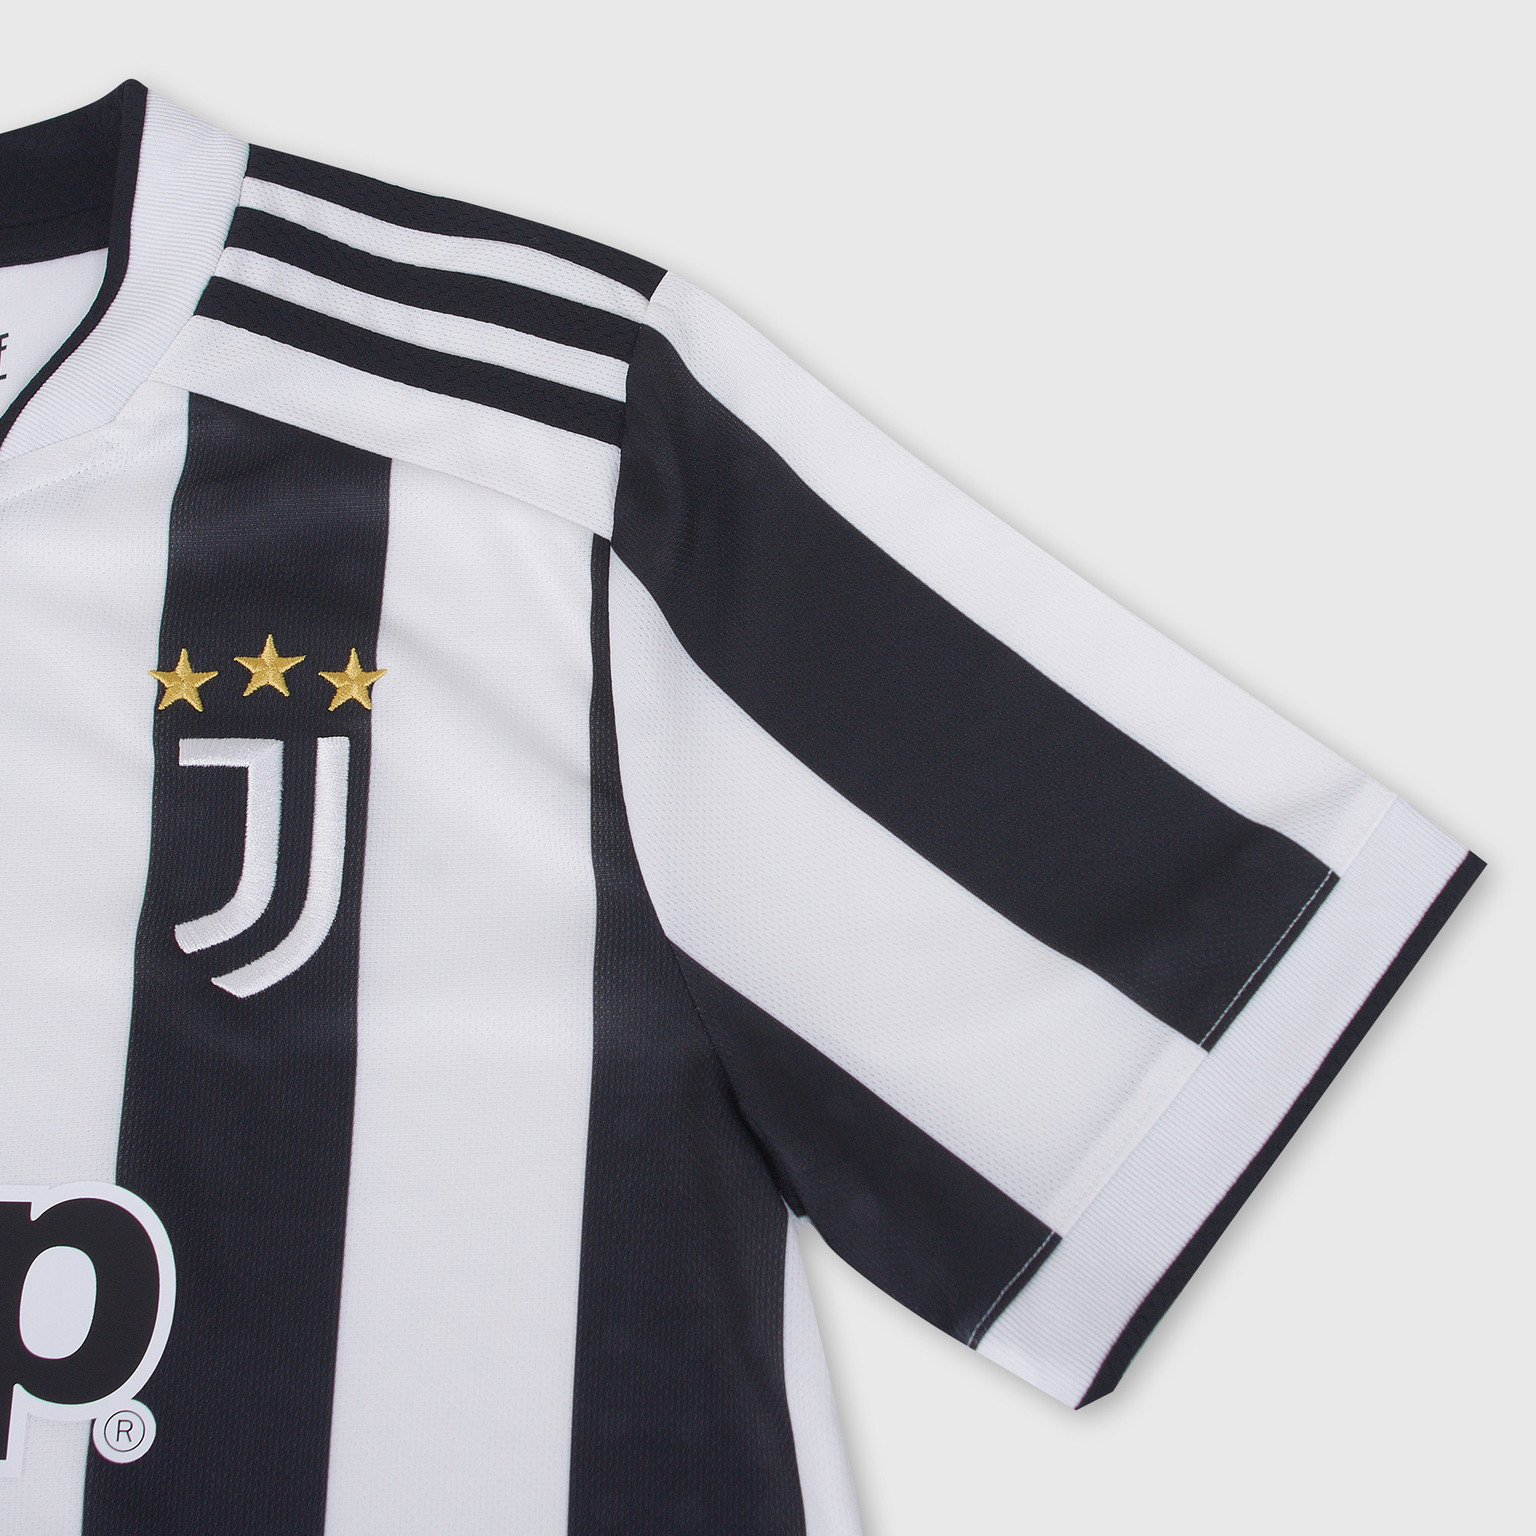 Футболка домашняя подростковая Adidas Juventus сезон 2021/22